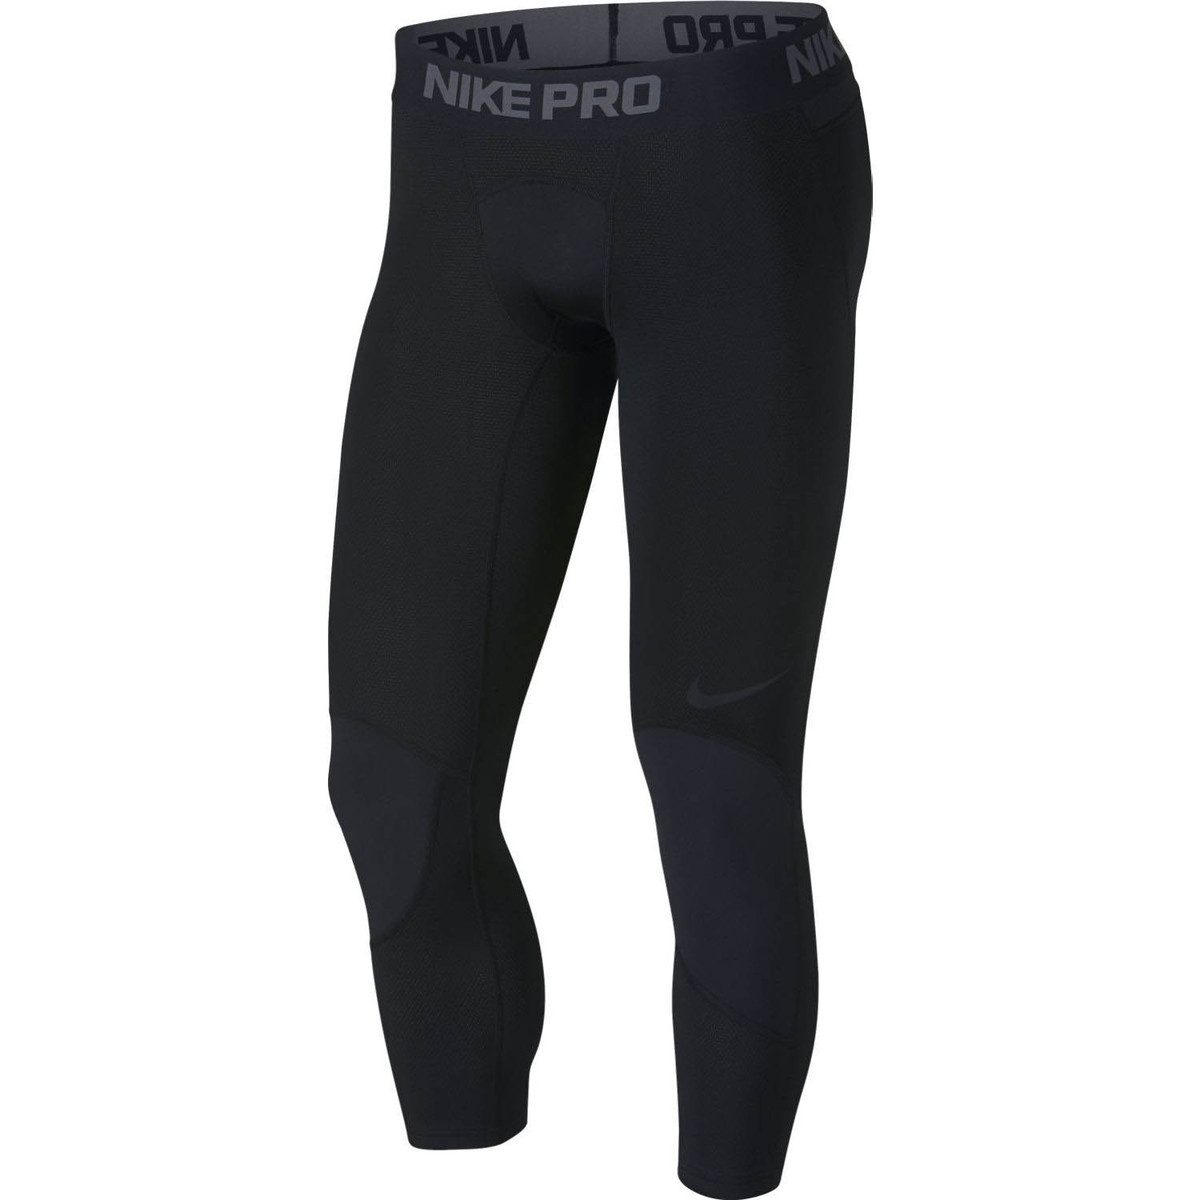 Nike Noir Collants Pro Dry 3/4 pE7uNVU3